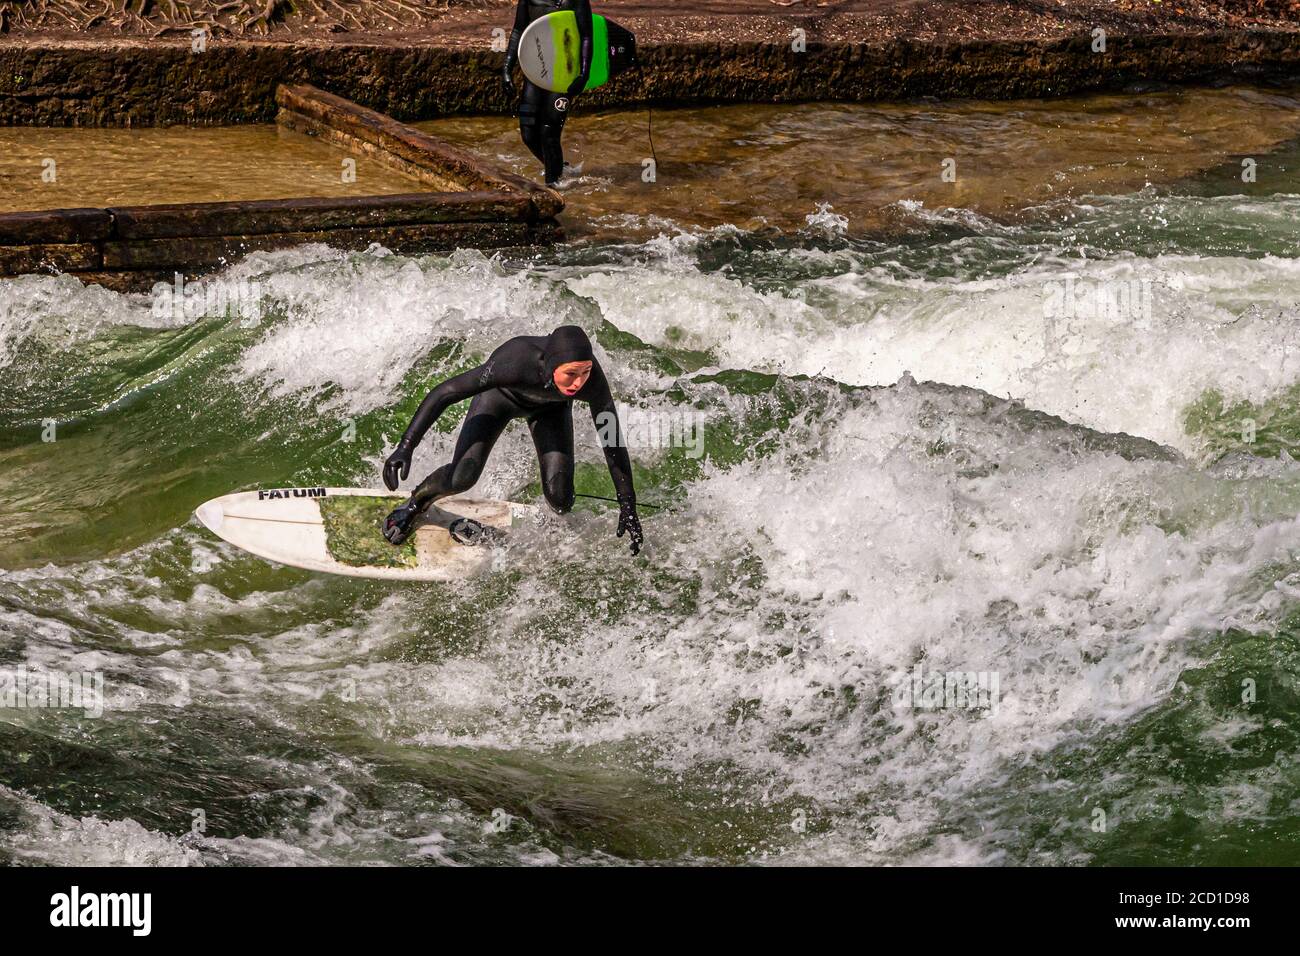 River-Surfing en el Eisbach en Munich, Alemania. La ola de pie puede ser surfed por el tiempo que uno tiene el equilibrio, y en tiempos ocupados una cola de surfistas se forma en el banco Foto de stock